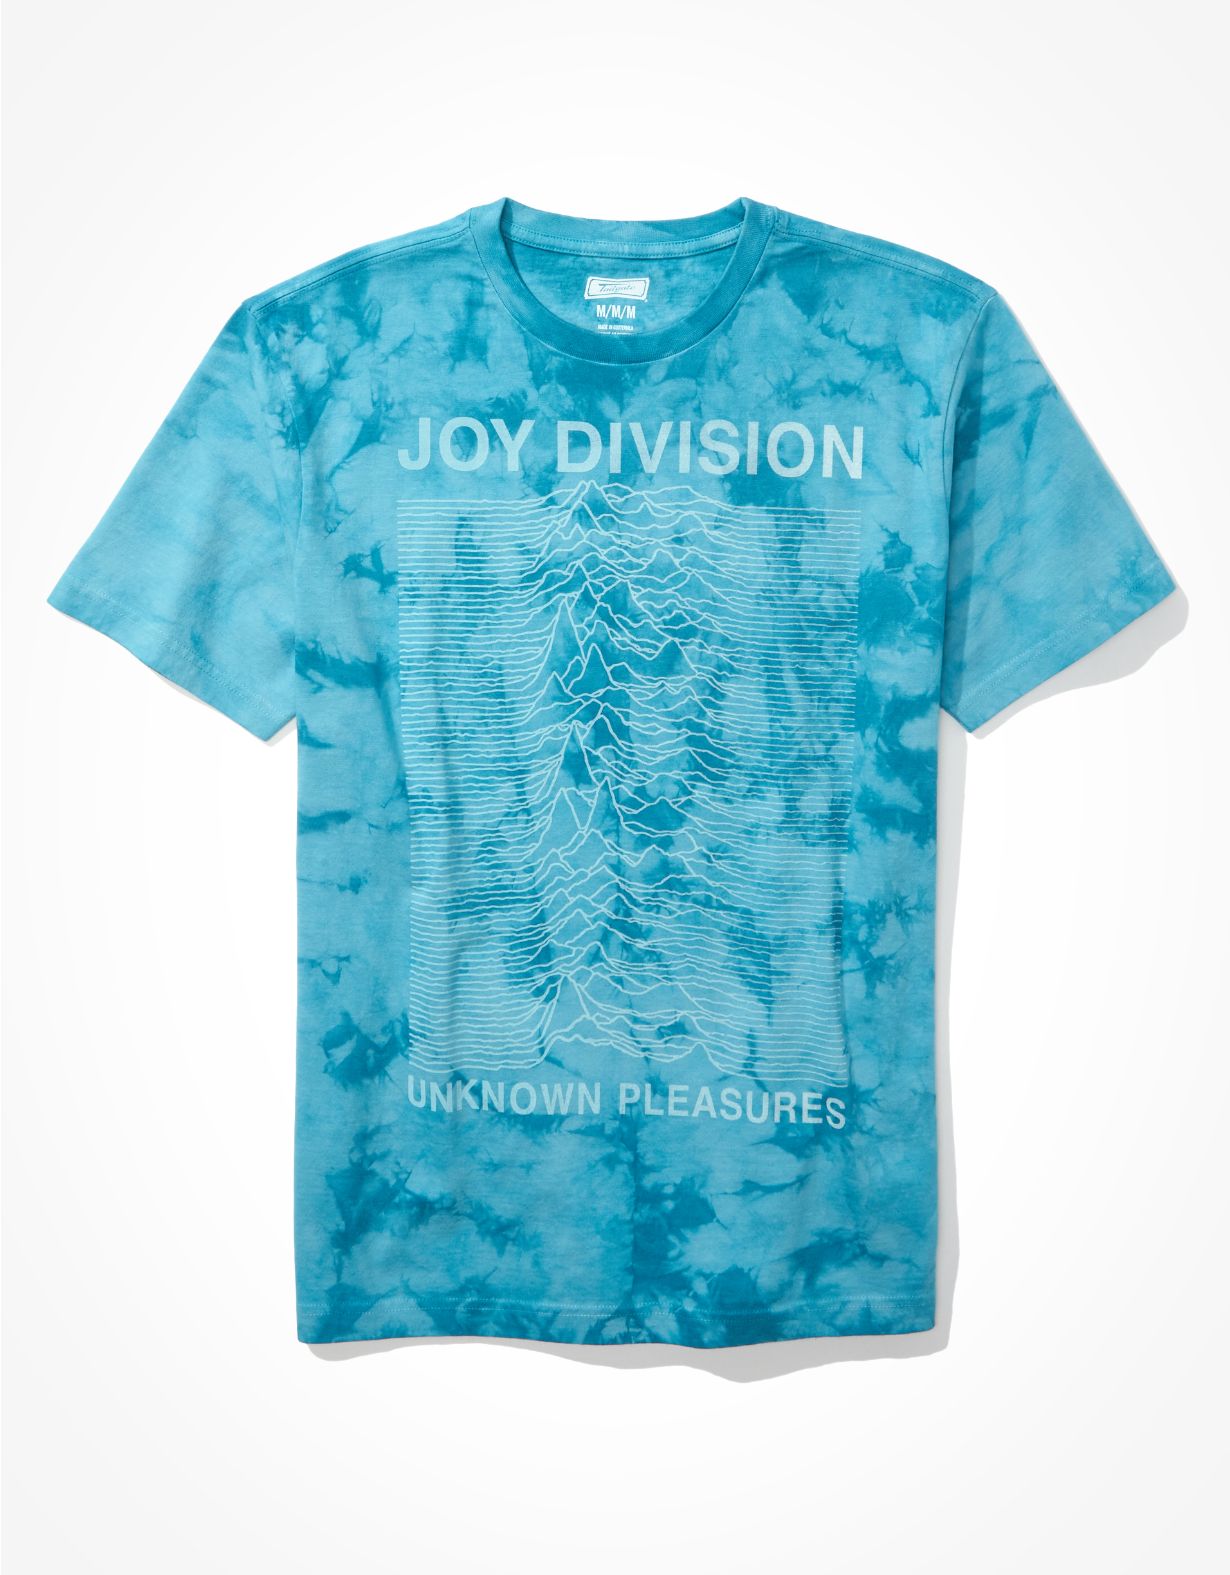 Tailgate Men's Joy Division Tie-Dye Graphic T-Shirt